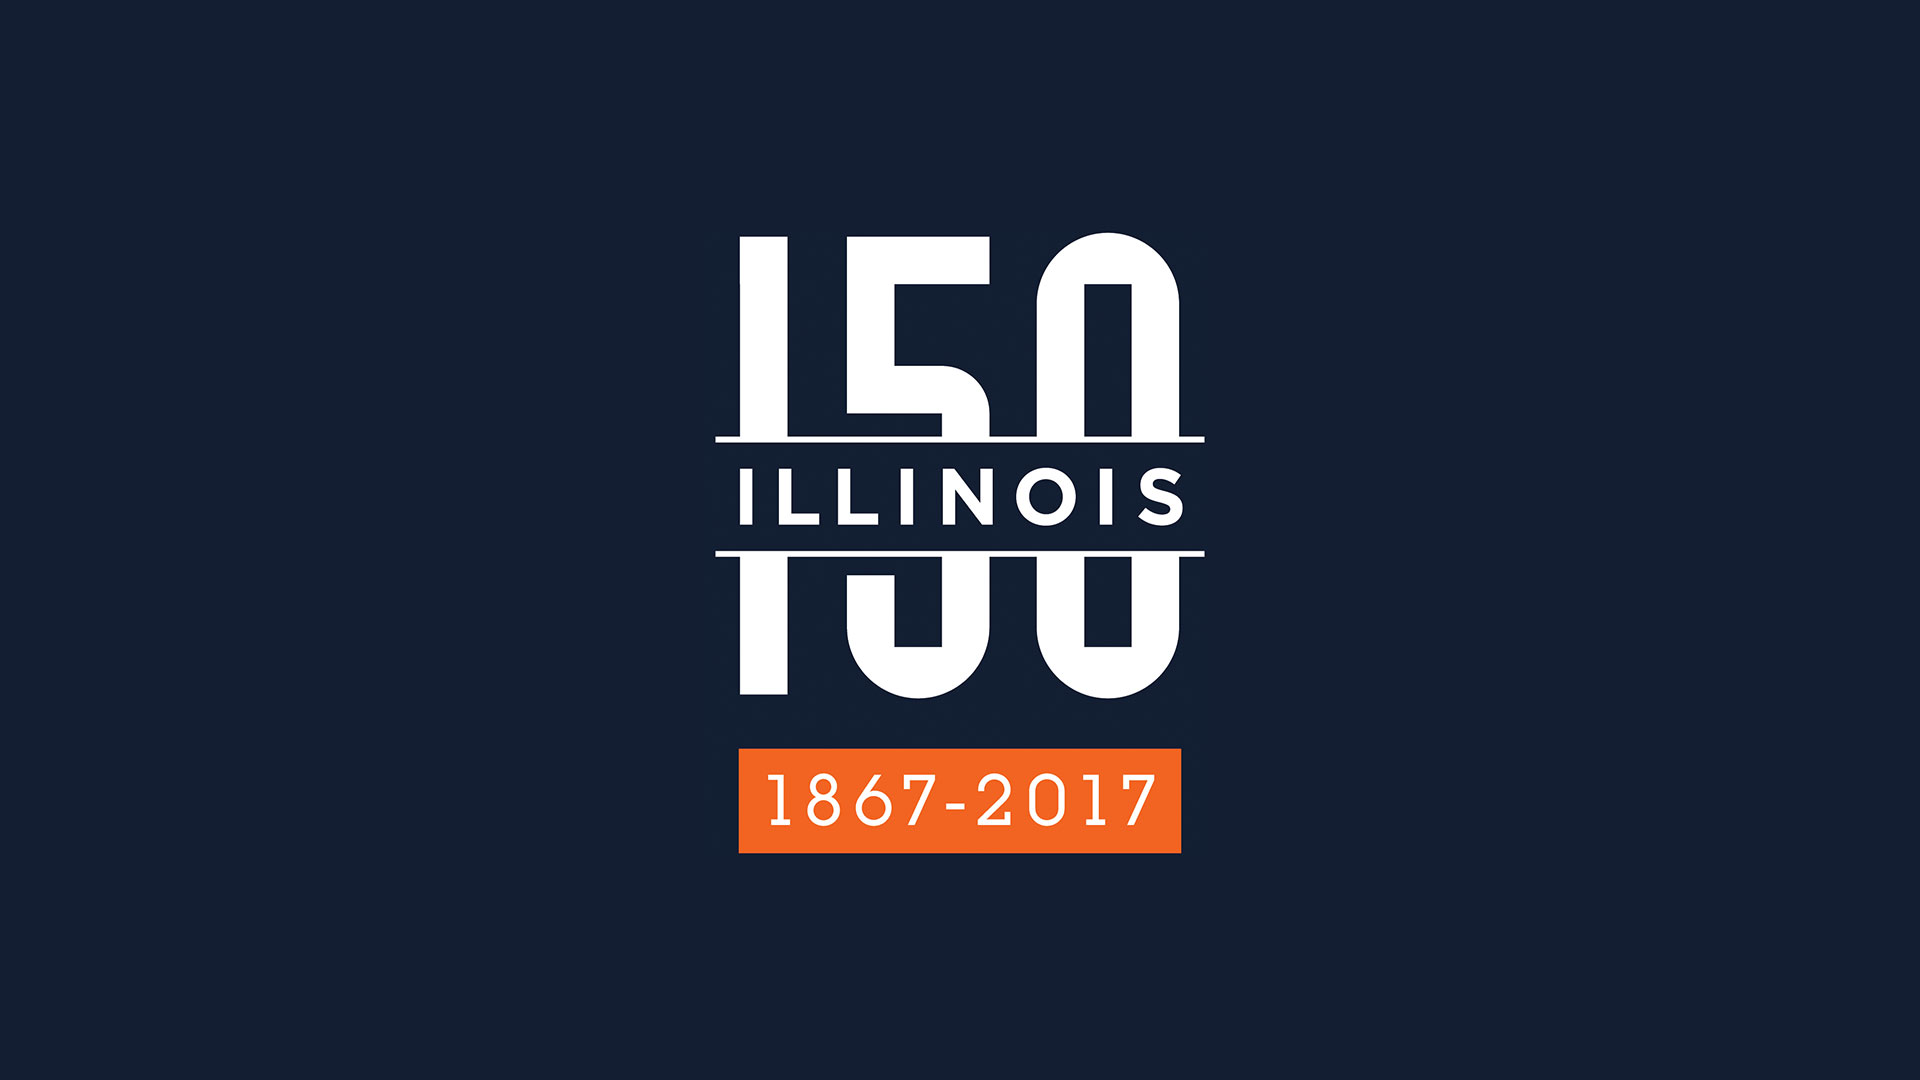 image of the University of Illinois 150 year celebration